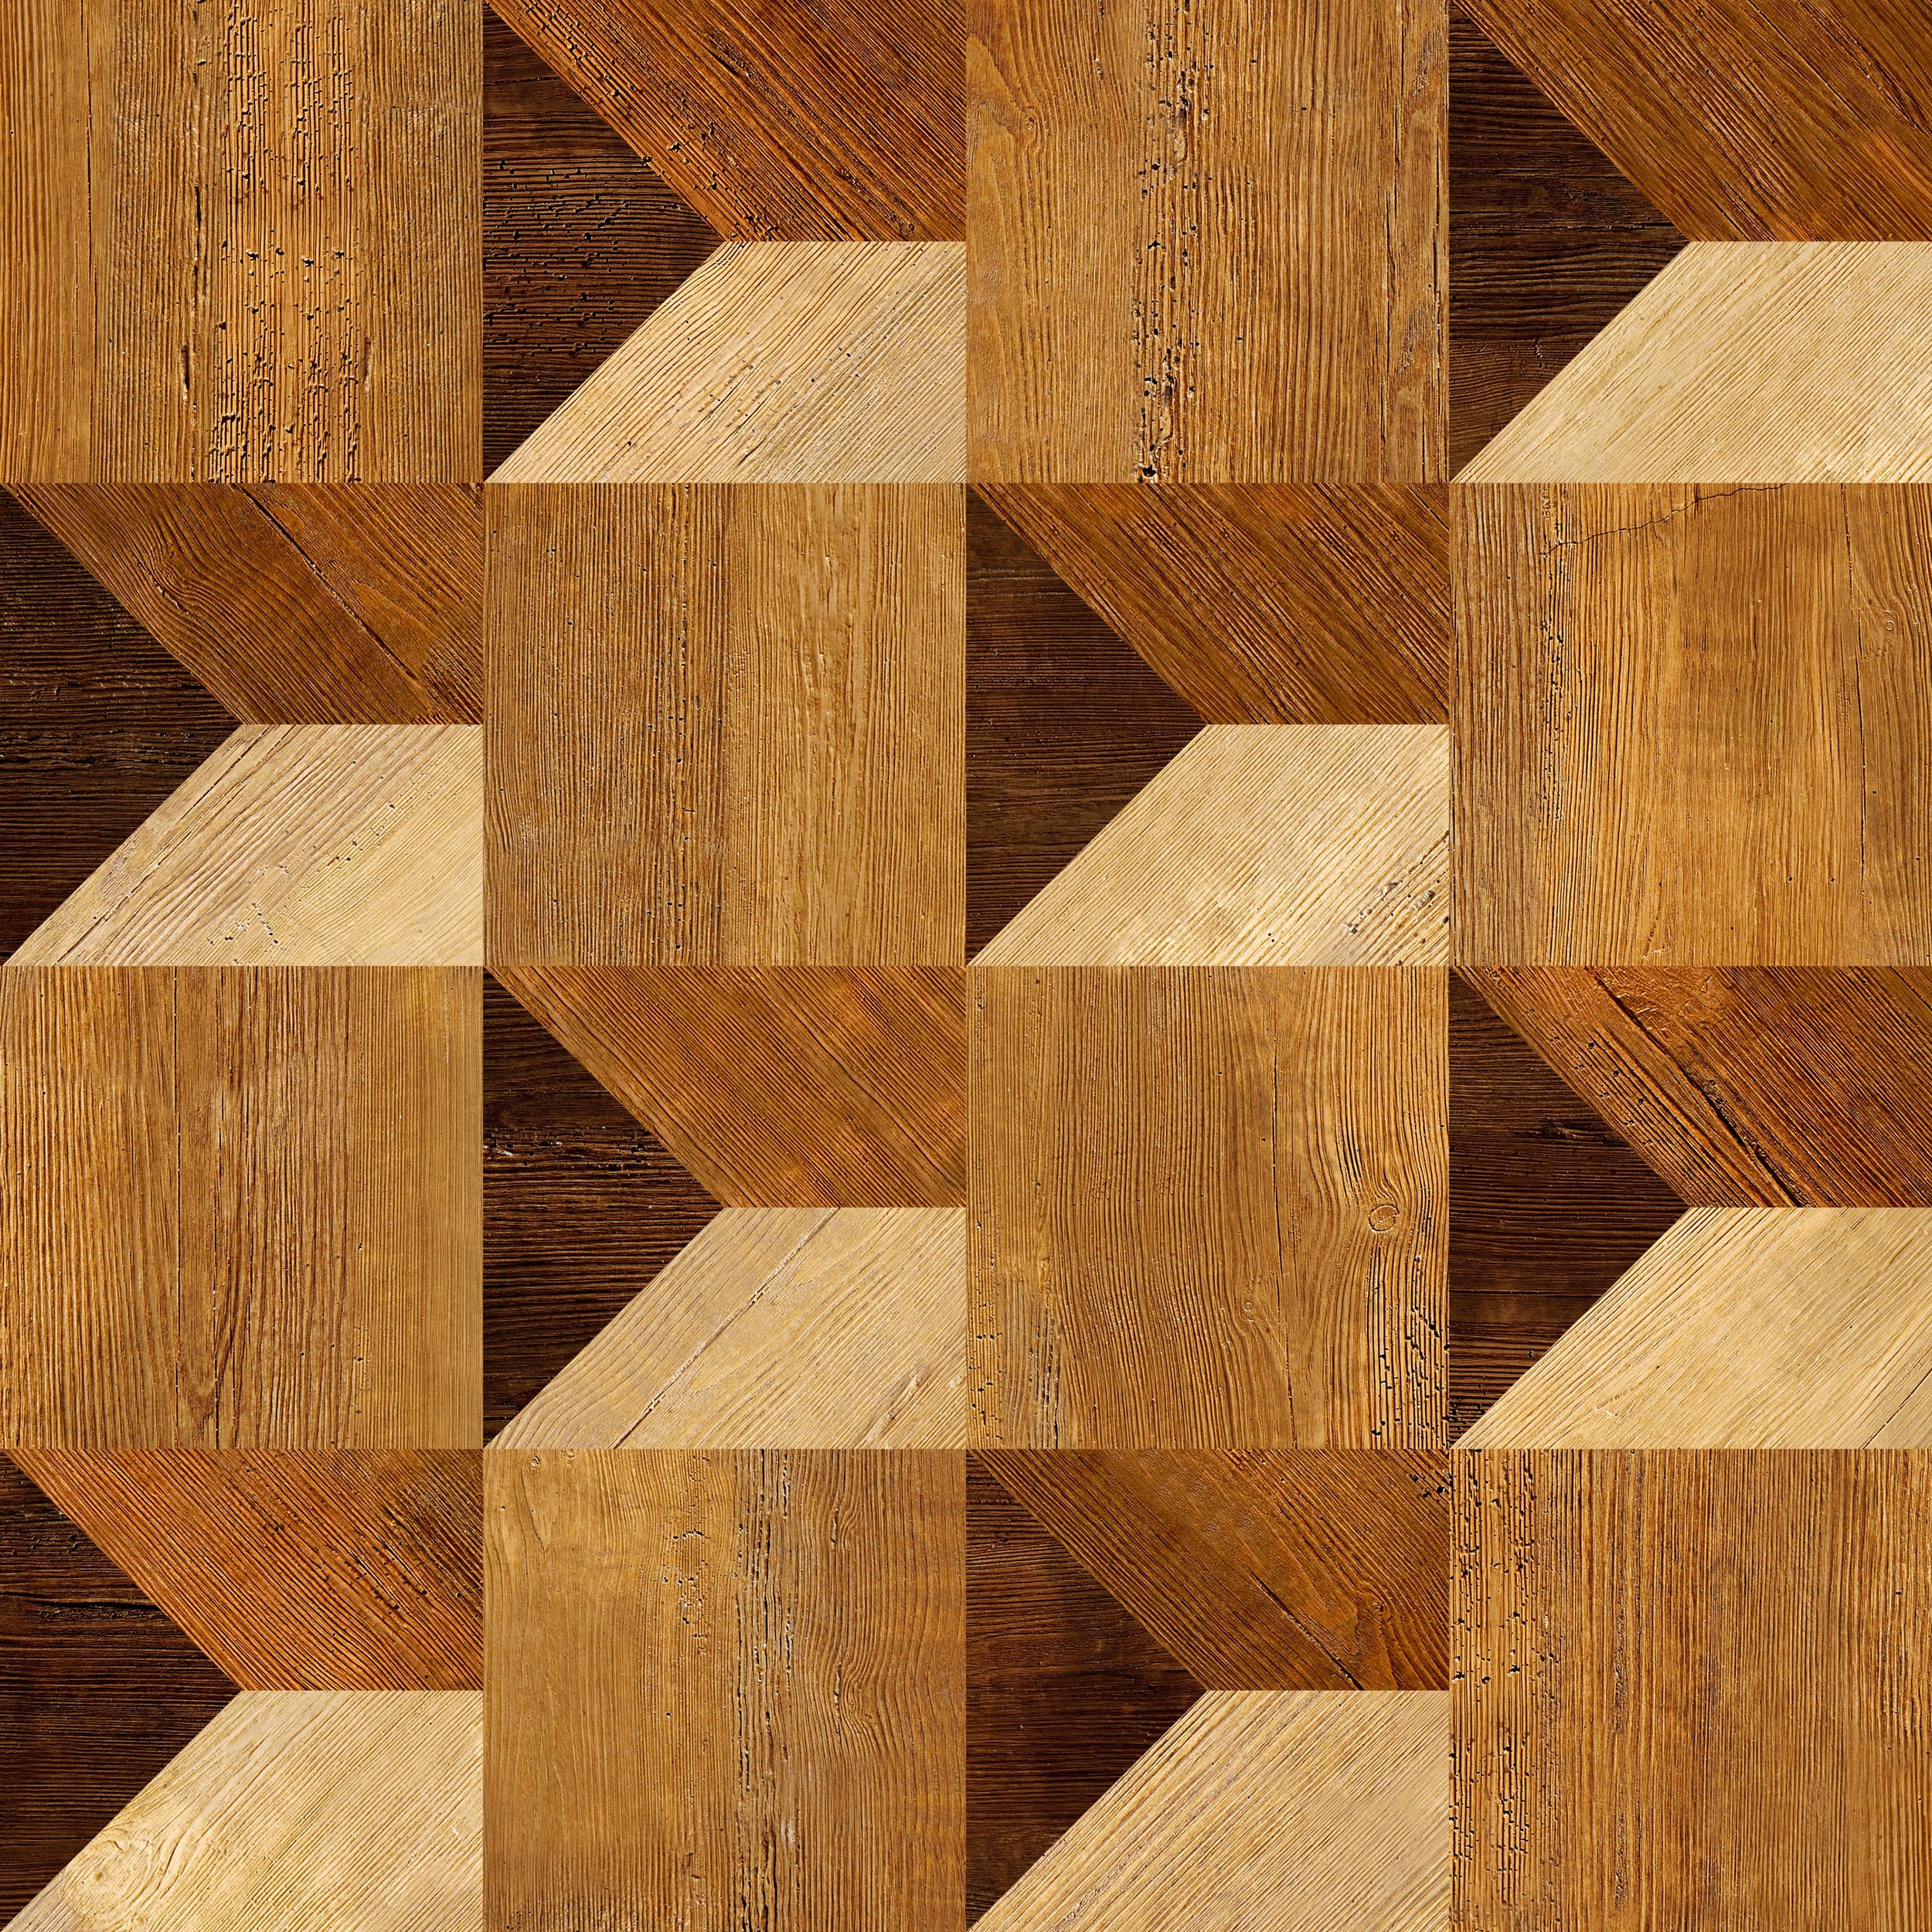 Hình ảnh liên quan đến các tấm vách gỗ trang trí sẽ giúp bạn có được cái nhìn tổng quan về những sản phẩm trang trí gỗ độc đáo và sang trọng. Hãy khám phá bức ảnh để nhận được cảm nhận và cảm giác tuyệt vời từ những chiếc vách trang trí này.